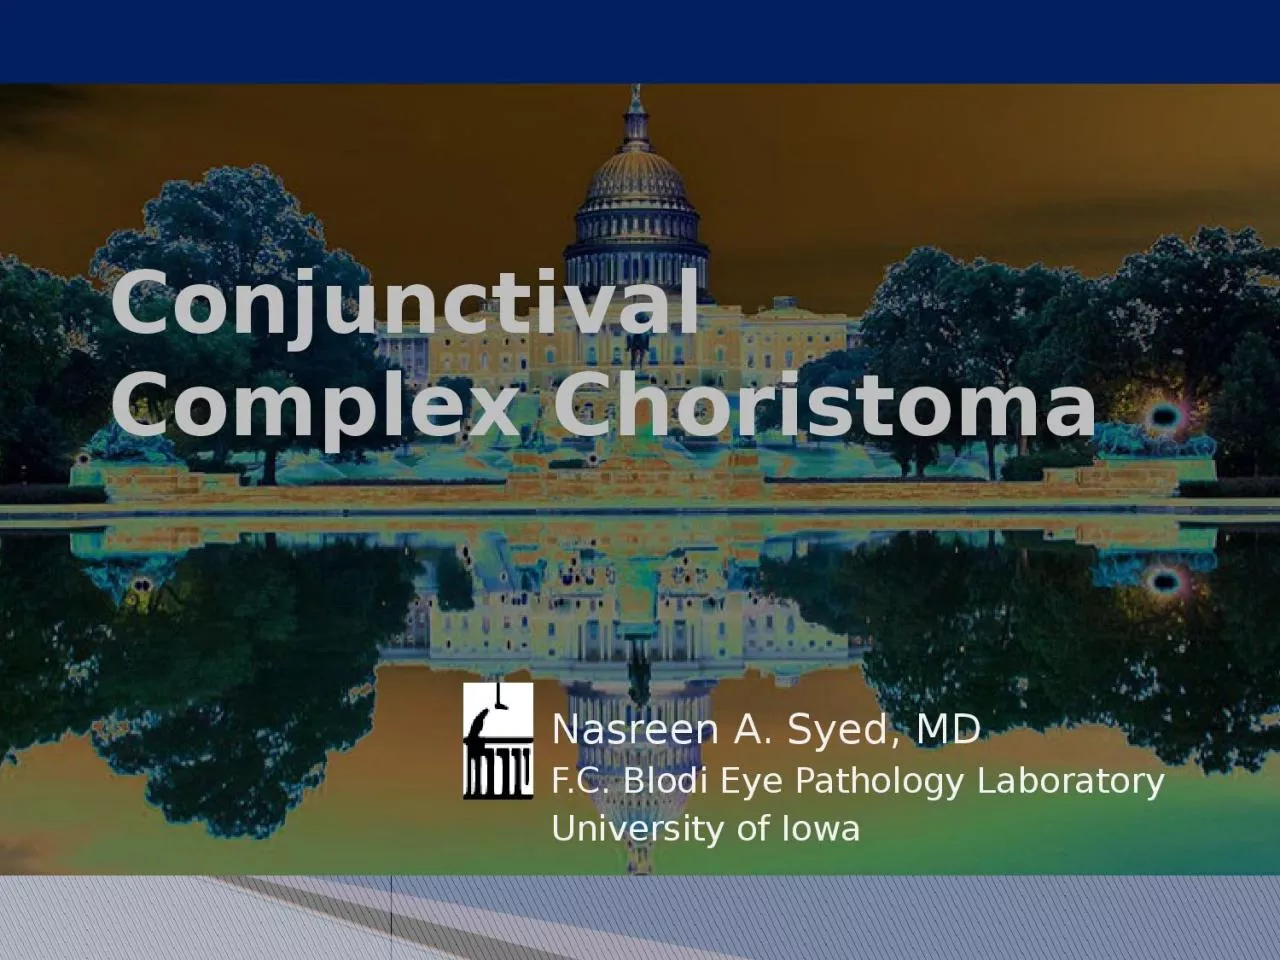 Conjunctival Complex Choristoma